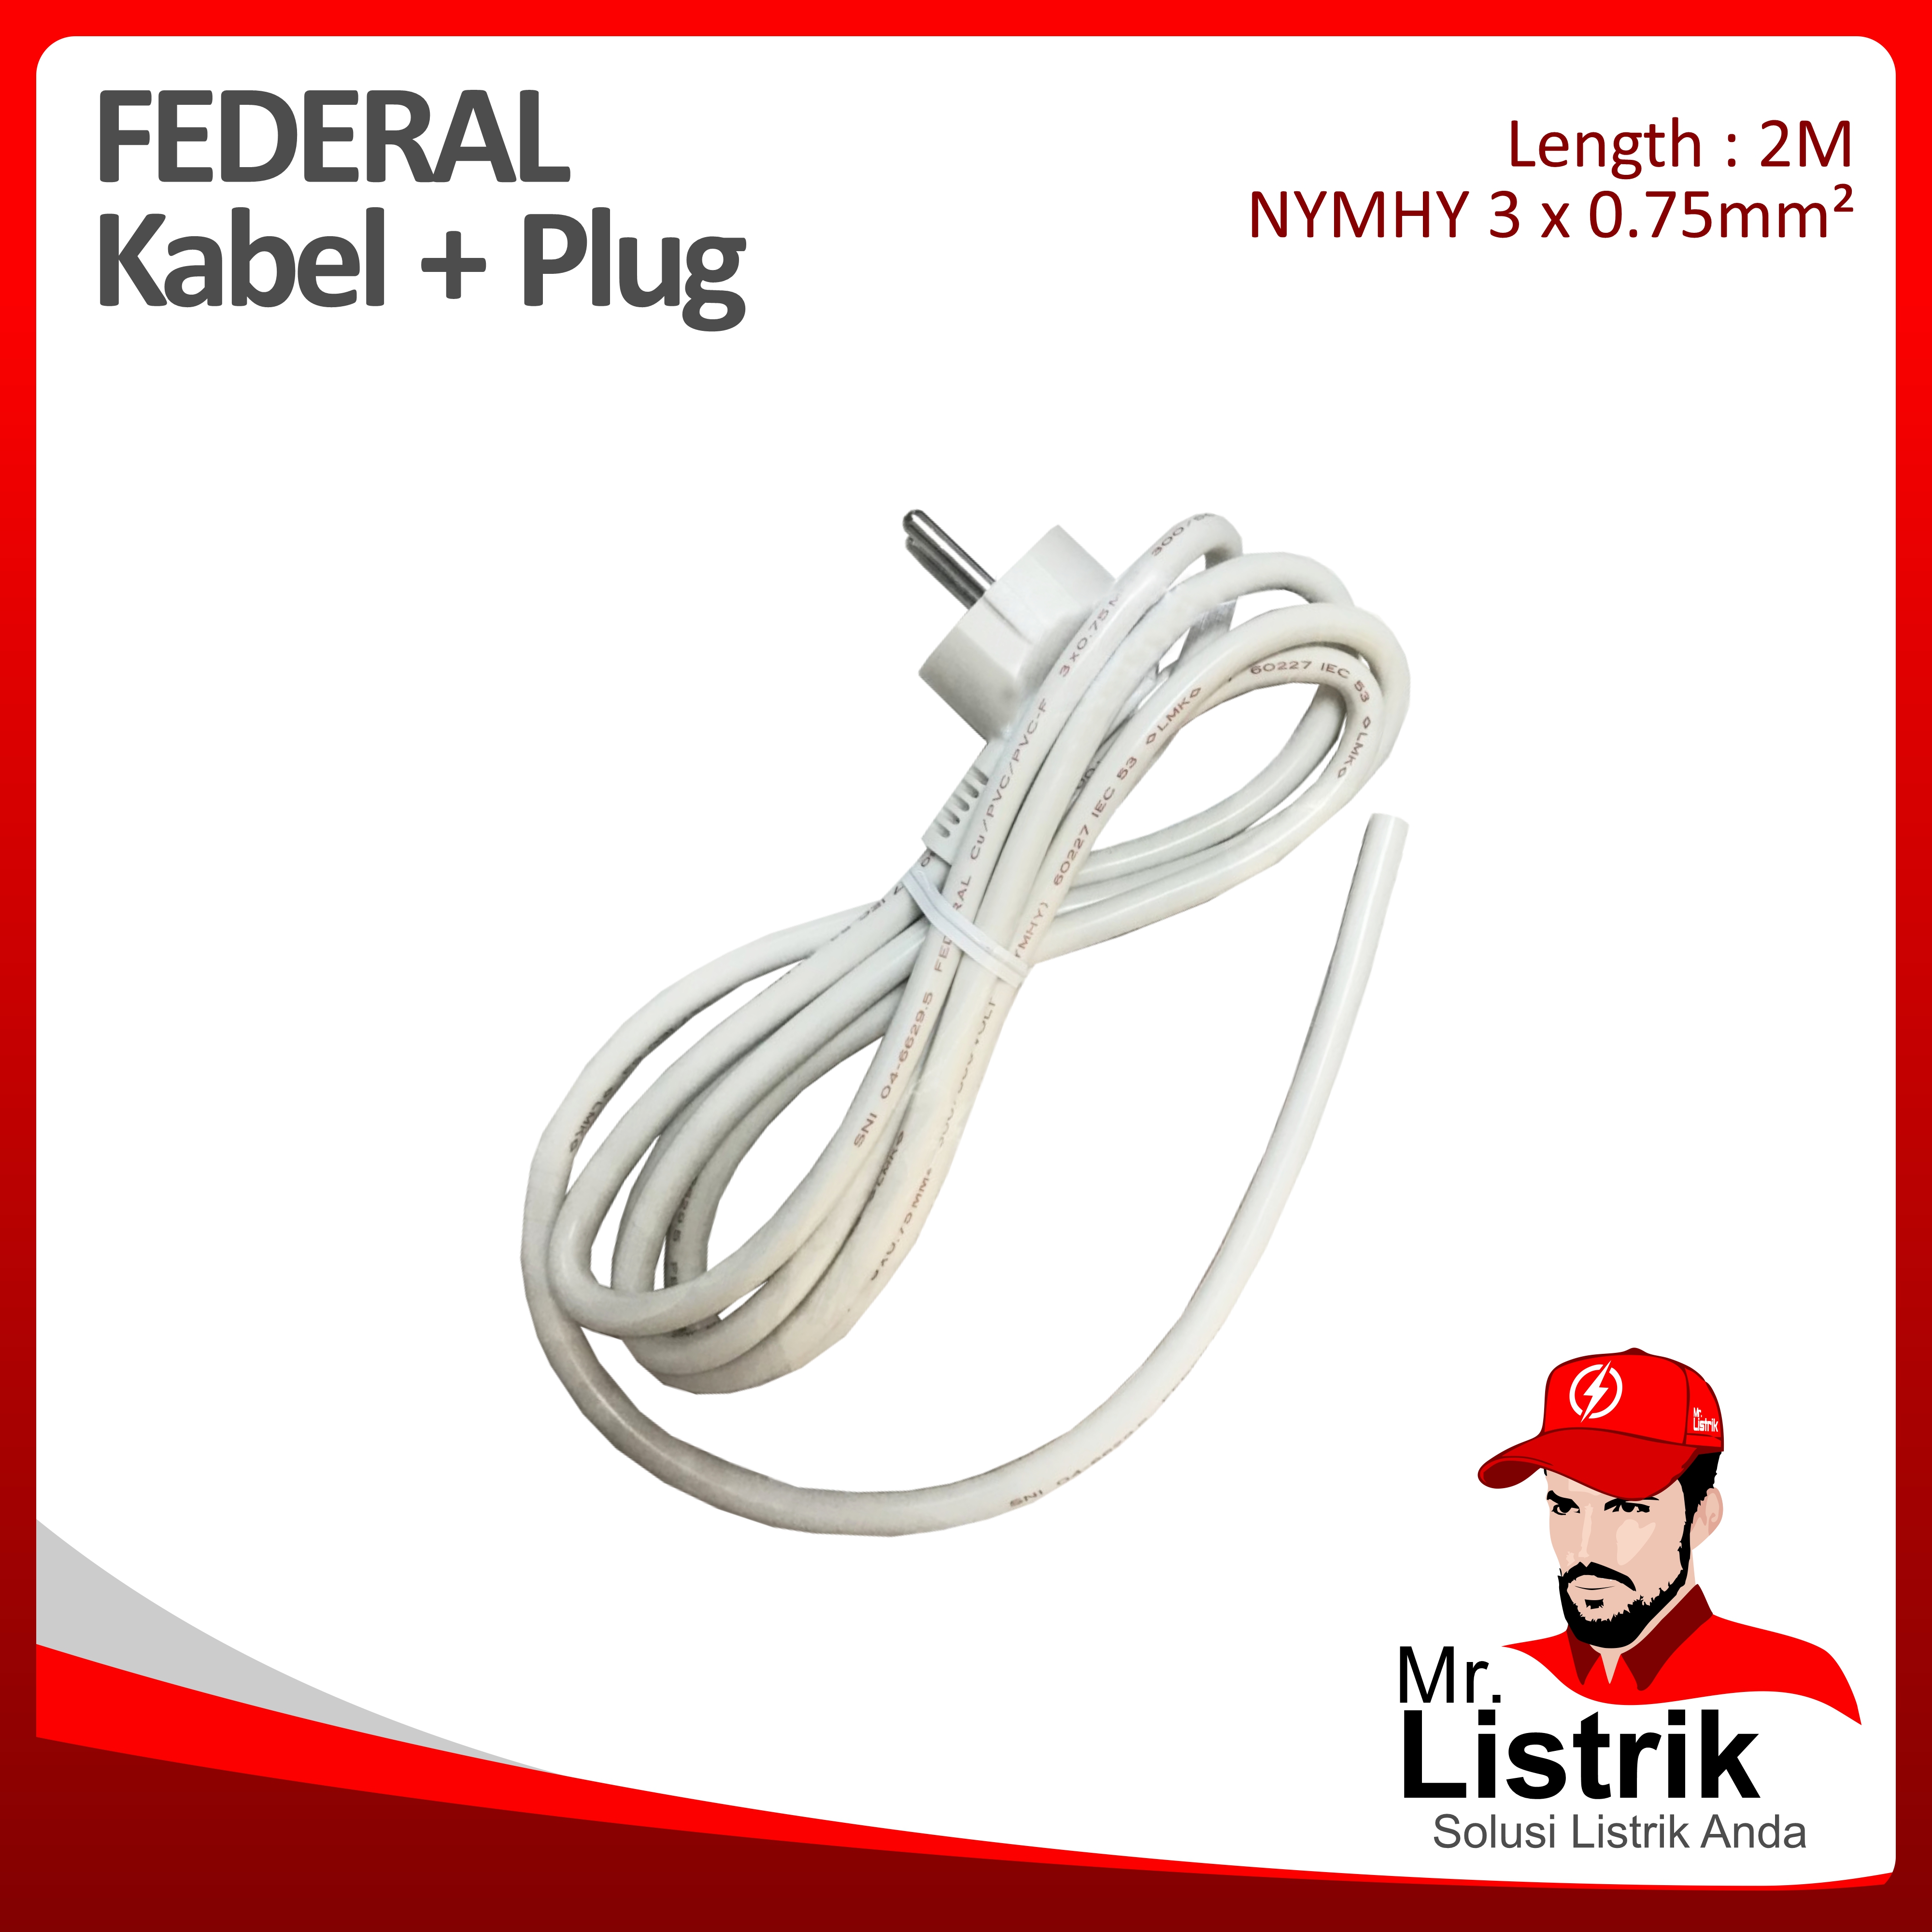 NYMHY 3 x 0.75mm² 2M + Plug Federal 